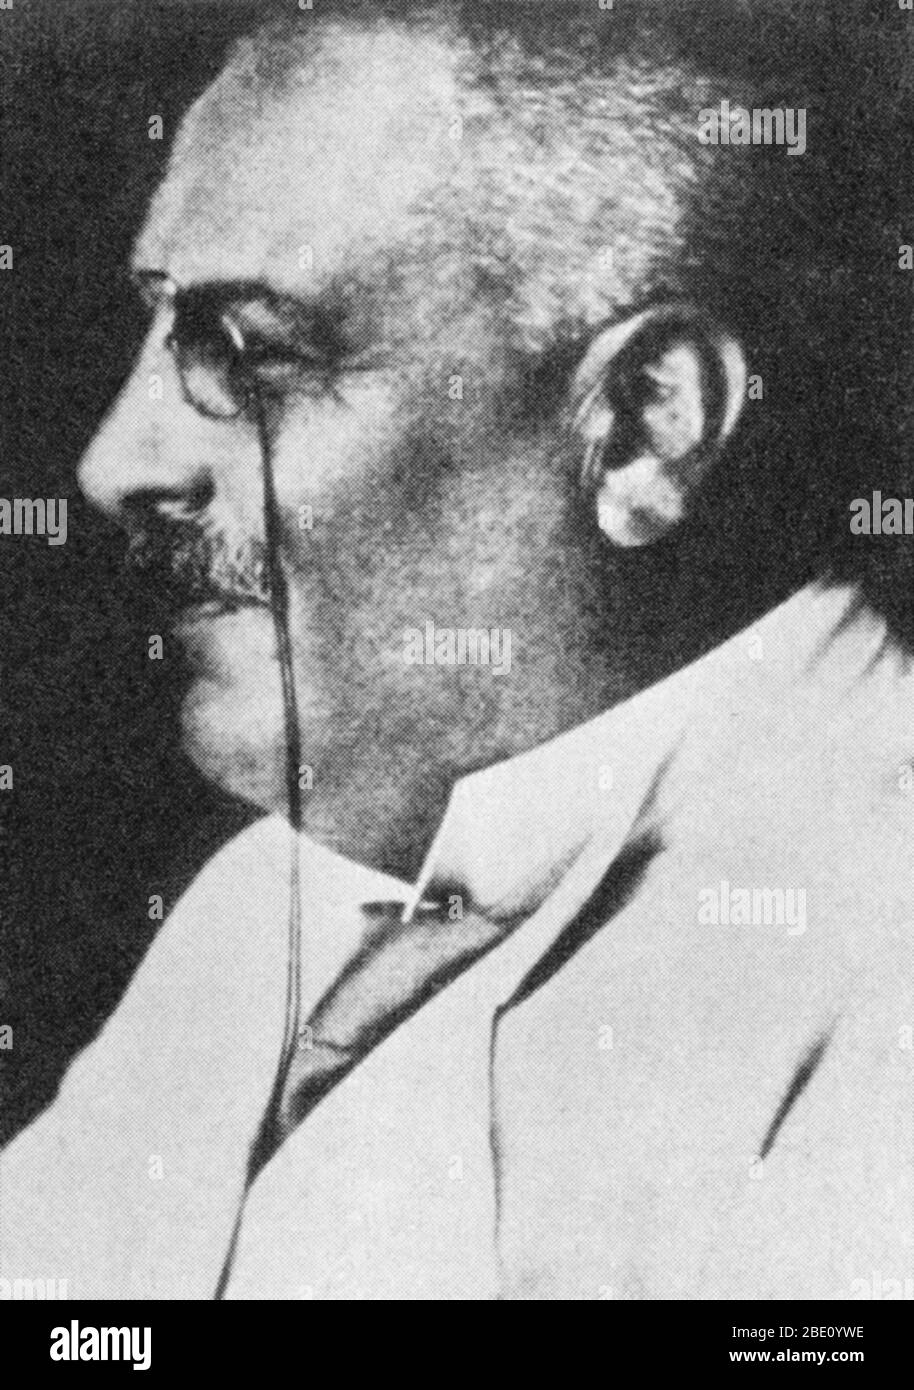 Aloysius 'Alois' Alzheimer (1864-1915) war ein deutscher Psychiater und Neuropathologe und ein Kollege von Emil Kraepelin. 1906 machte Alzheimer eine vollständige klinische und pathologische Beschreibung der präsenilen Demenz, die als Alzheimer-Krankheit bekannt wurde, ein progressiver Zustand, in dem Nervenzellen im Gehirn degenerieren. 1915 erkrankte Alzheimer auf einer Zugfahrt. Wahrscheinlich hatte er eine Streptokokken-Infektion und anschließend rheumatisches Fieber und Nierenversagen. Er starb im Alter von 51 Jahren an Herzinsuffizienz. Stockfoto